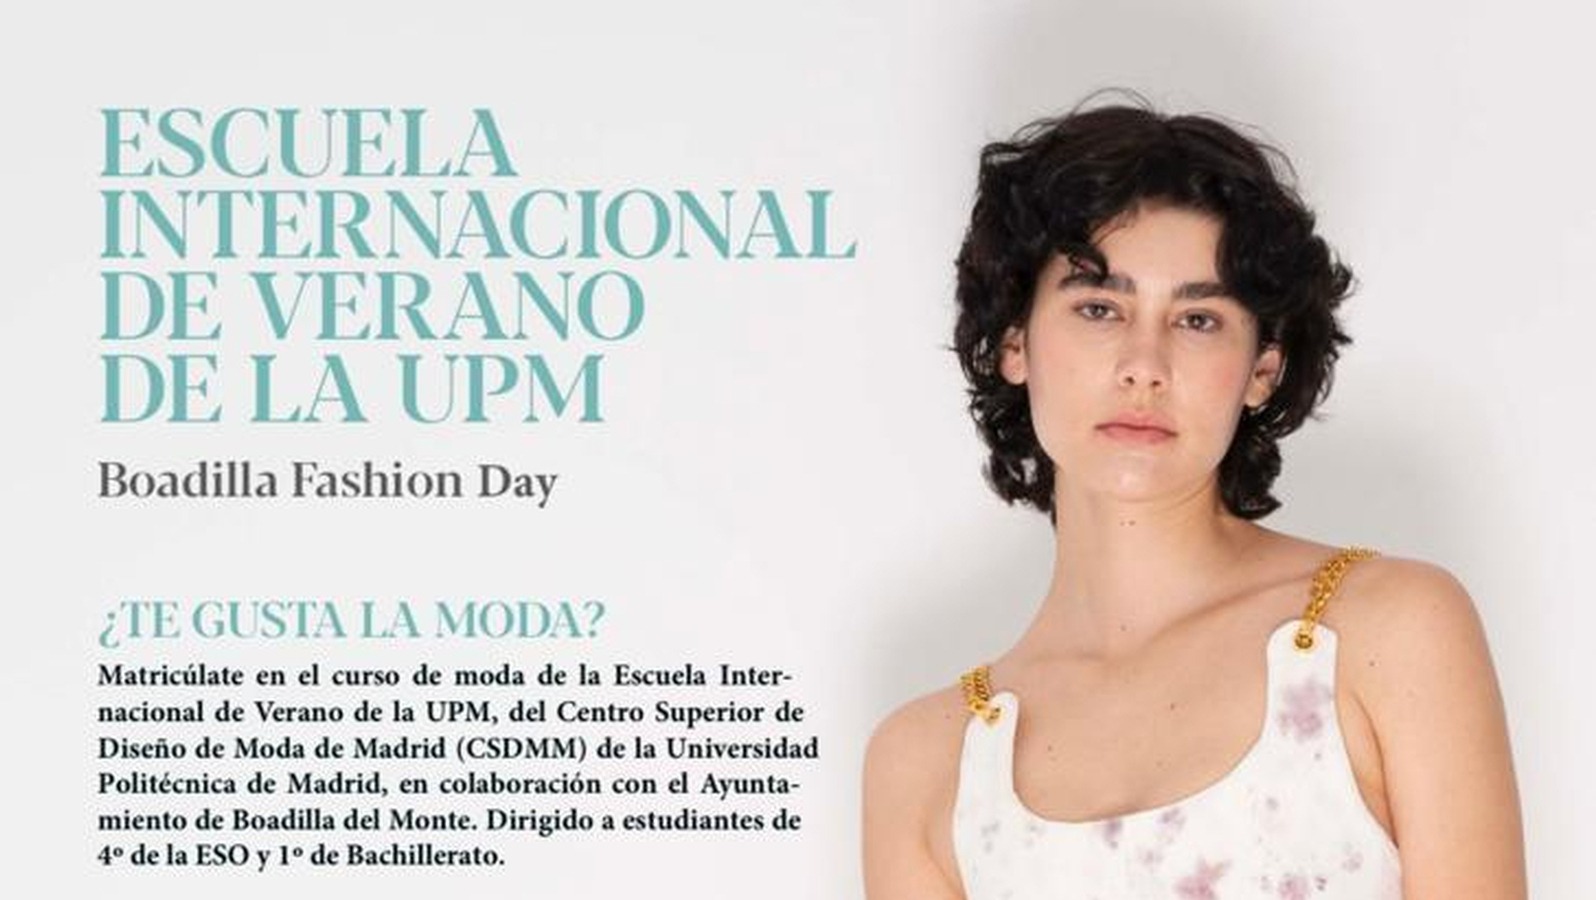 La Escuela de Verano de la UPM ofrece el curso de moda Boadilla Fashion Day para alumnos de 4º de ESO y 1º de Bachillerato